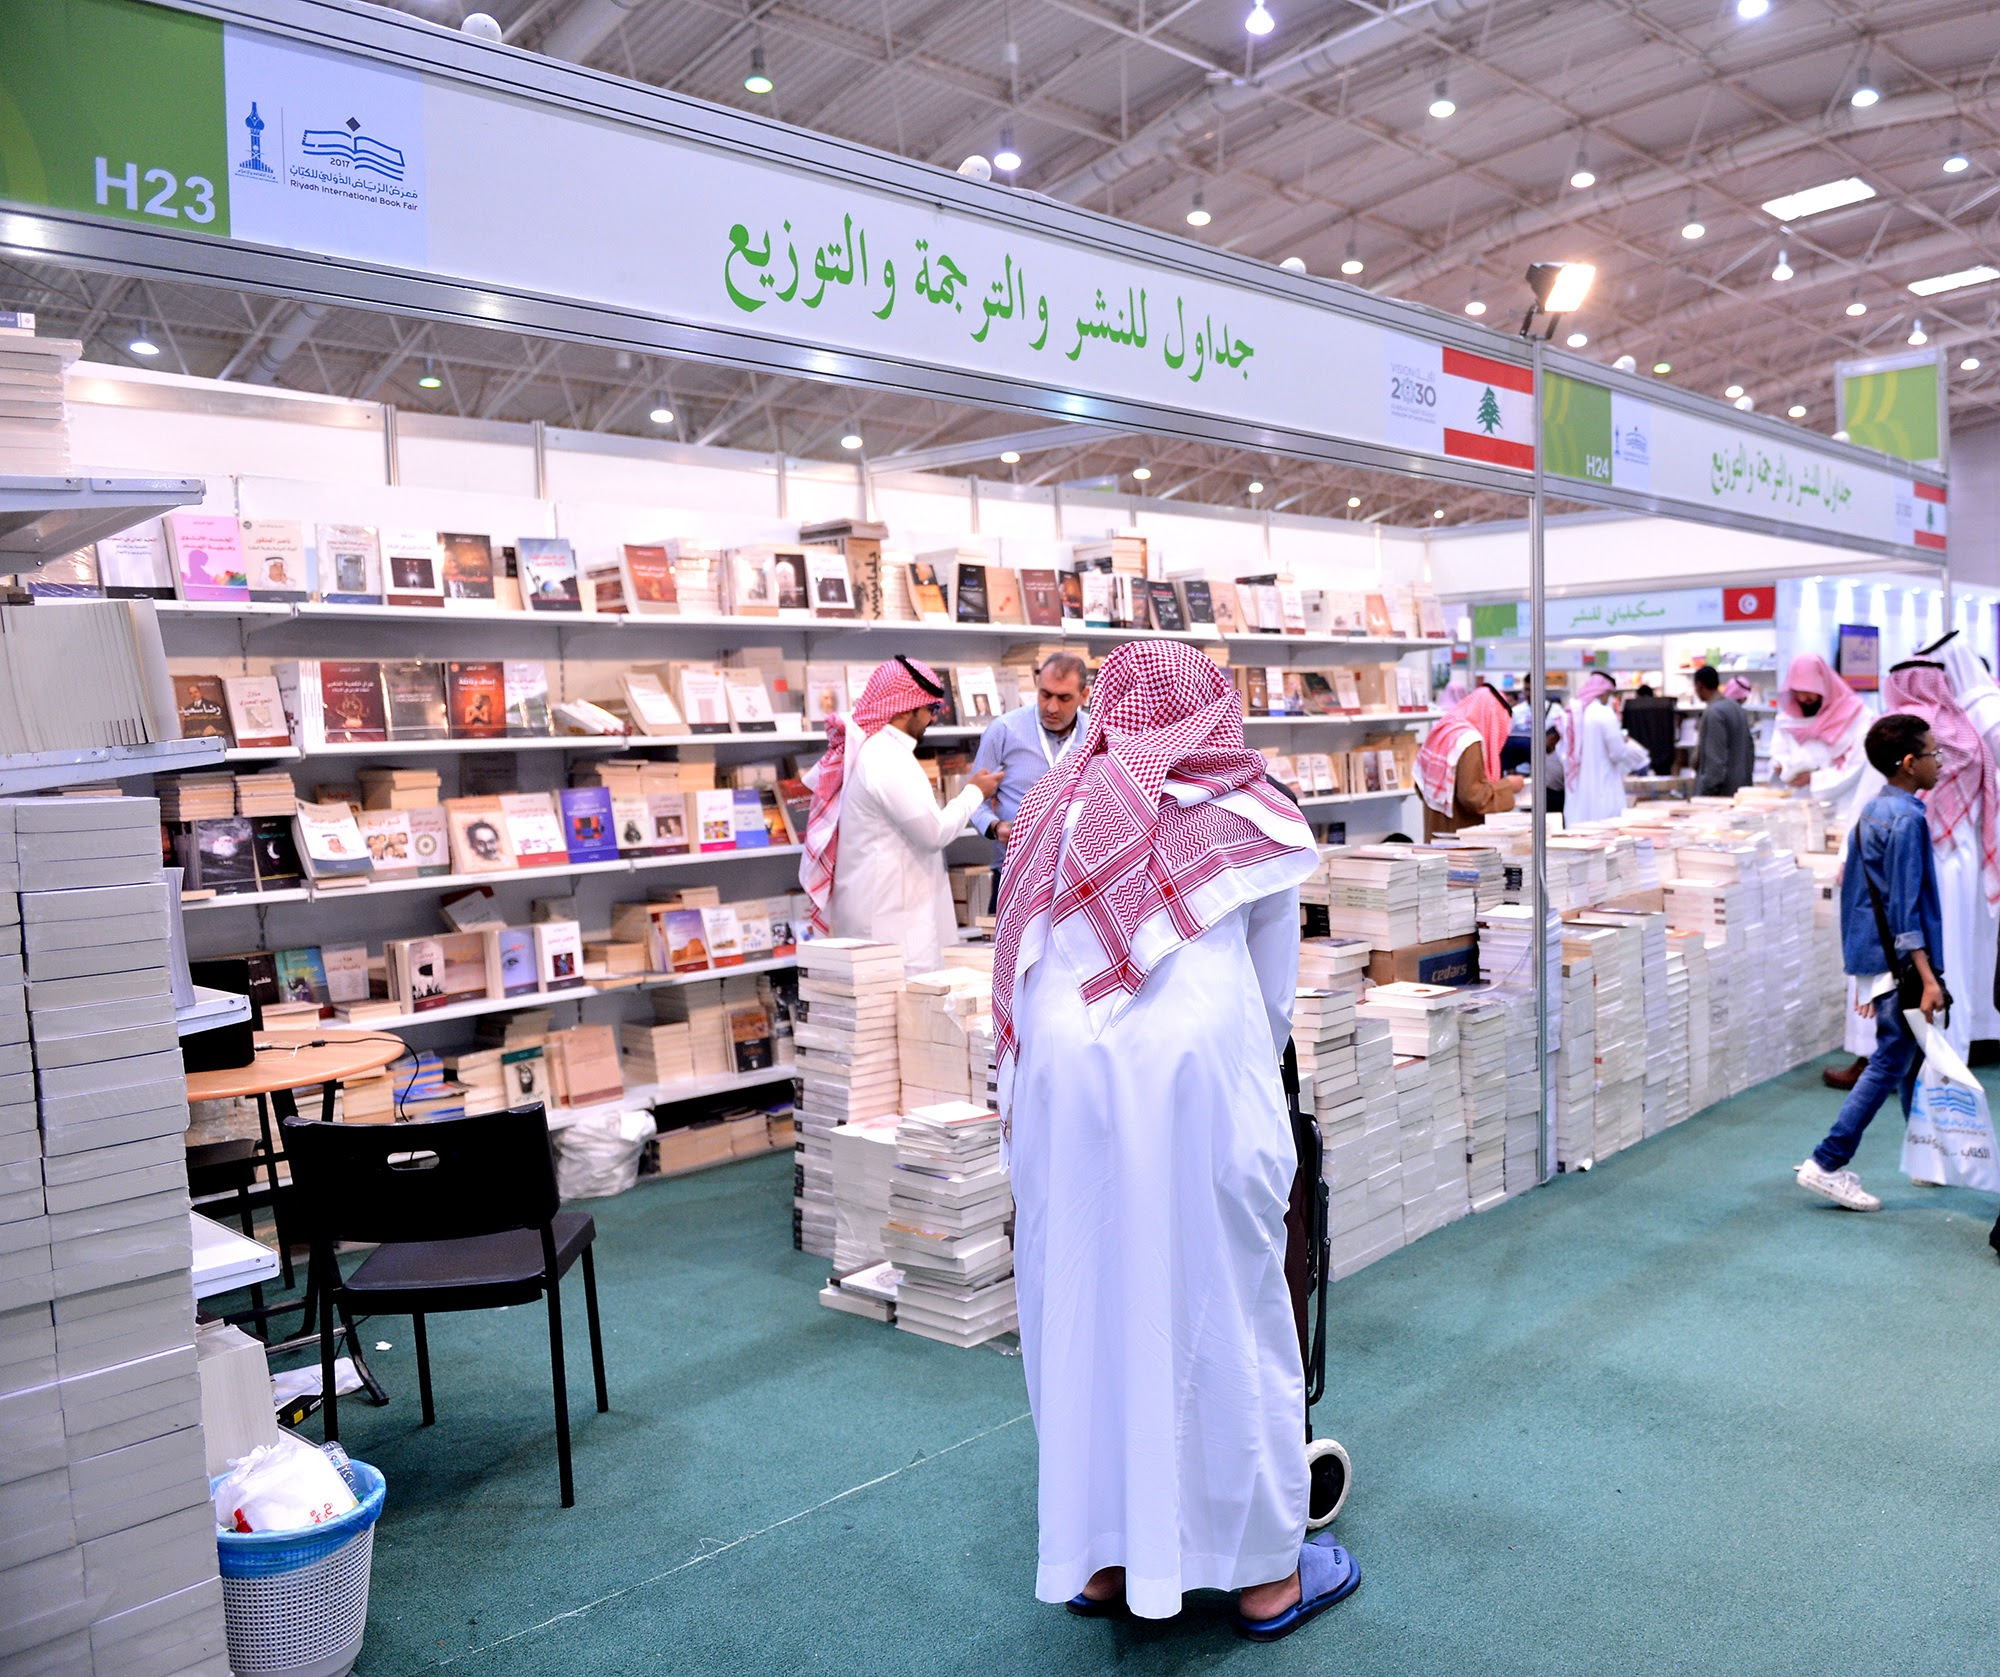 بـ 30 عنوانًا جديدًا دار “جداول” تثري “كتاب الرياض” تاريخيًا